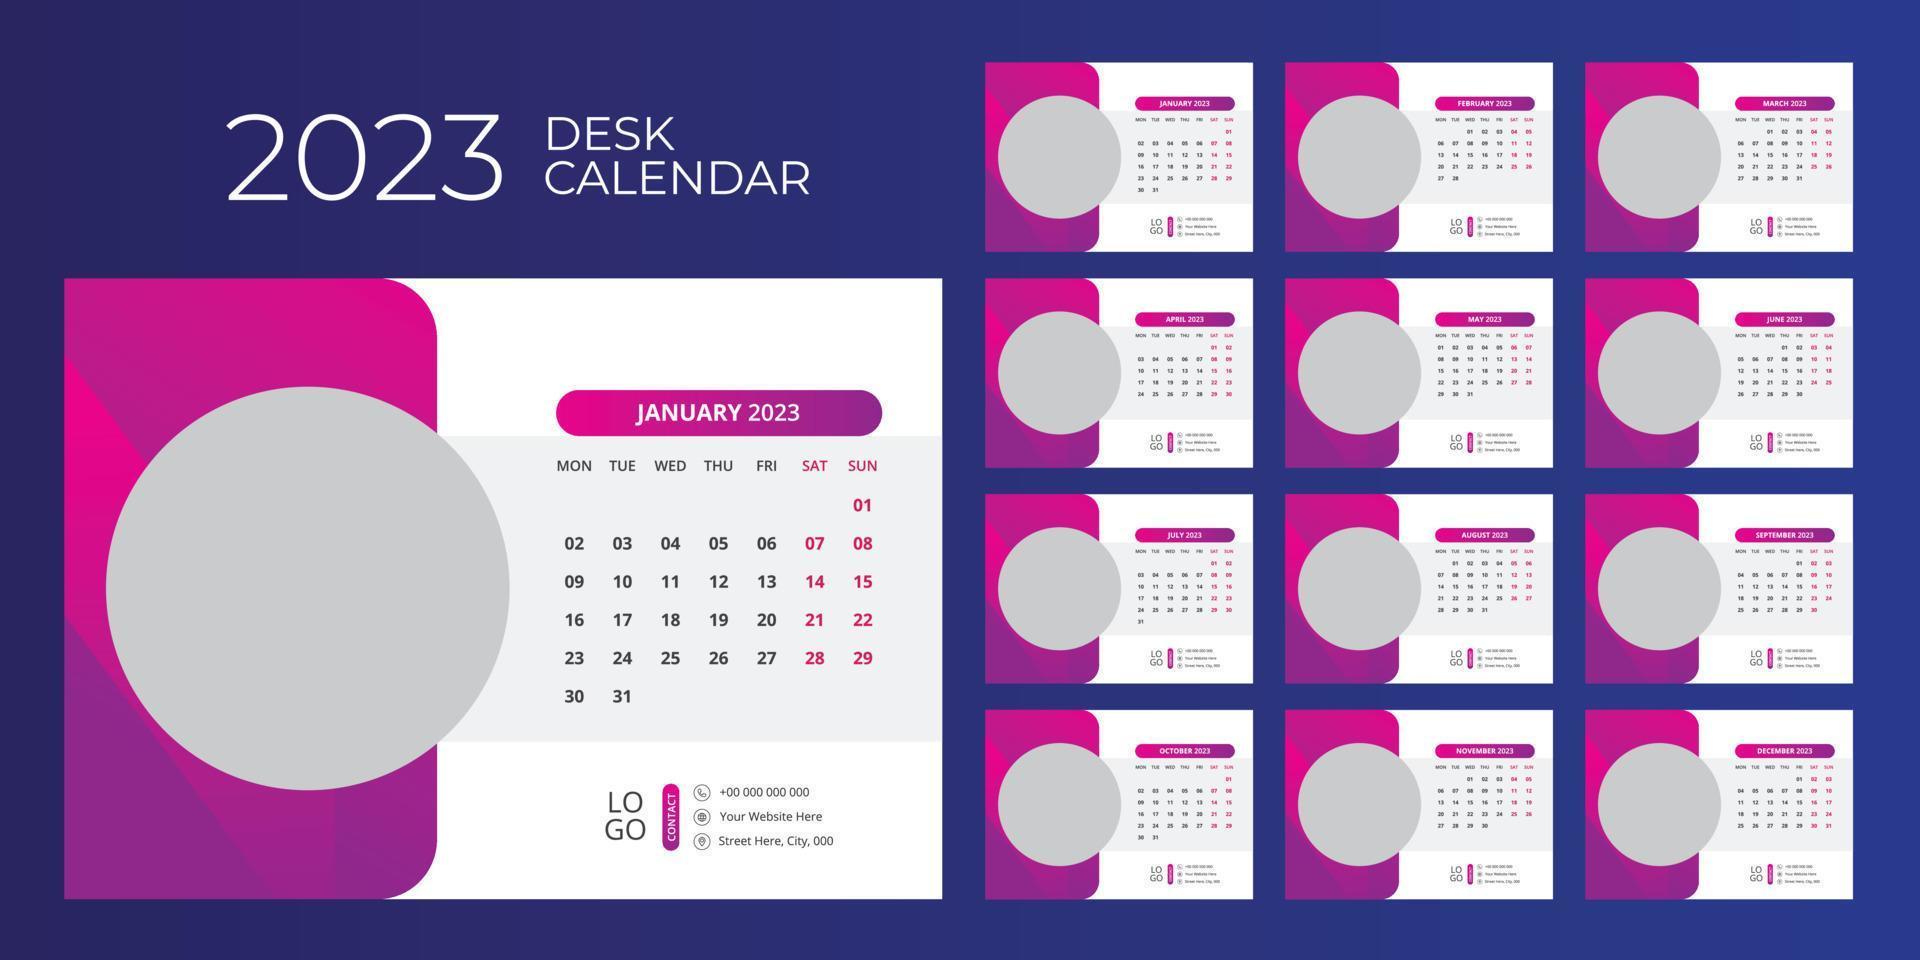 Desk Calendar Design 2023 vector